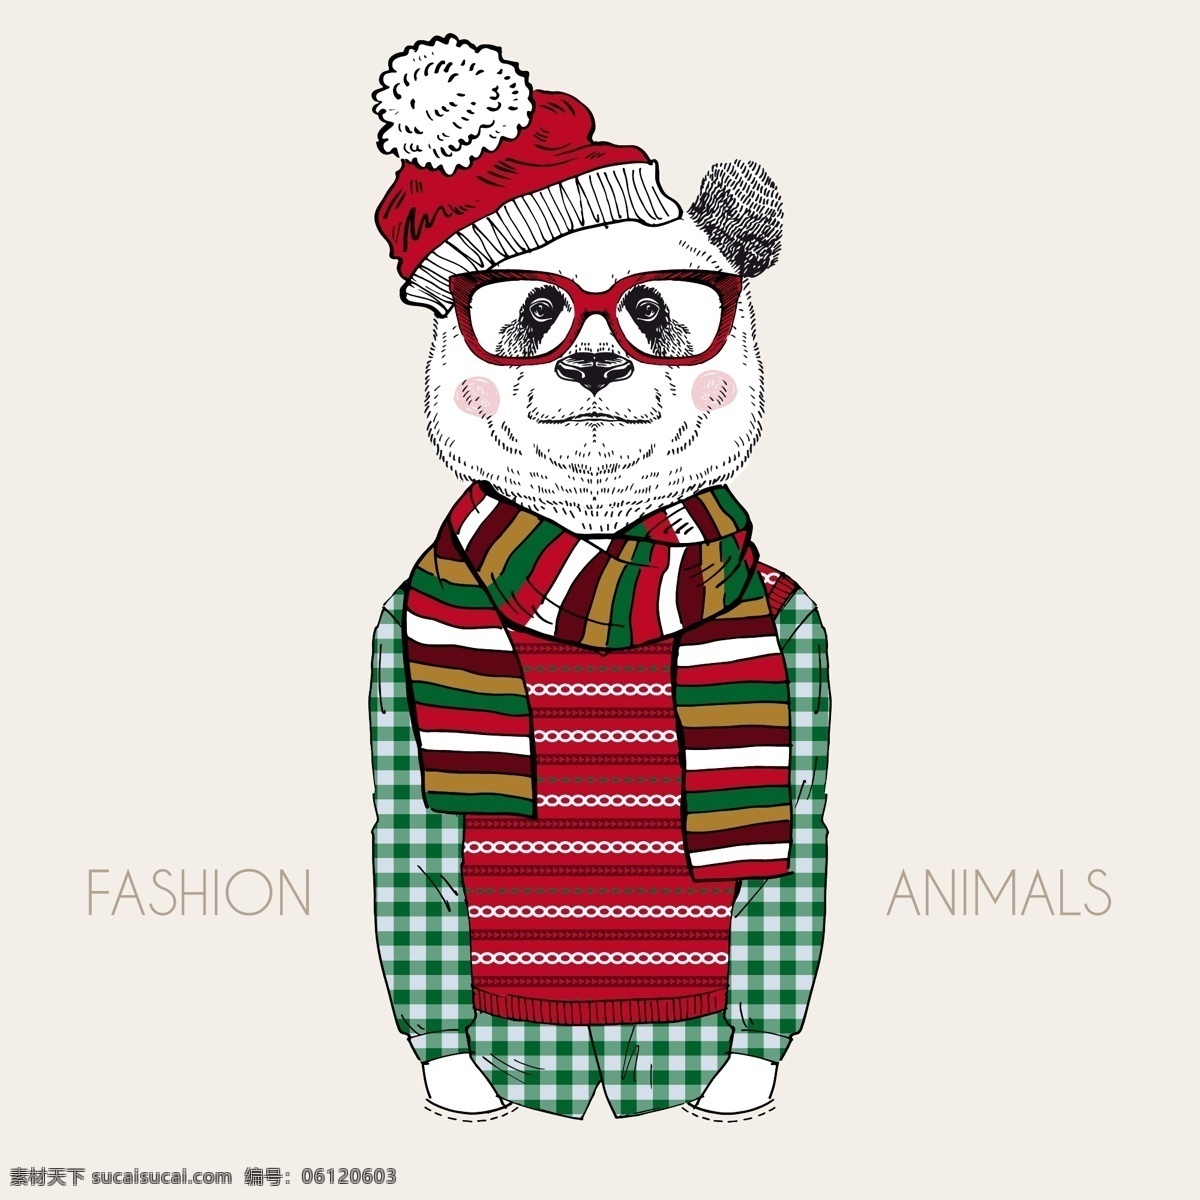 小熊圣诞装 眼镜 圣诞帽 时尚动物 动物人物 熊猫 动物 机器人 底纹边框 背景底纹